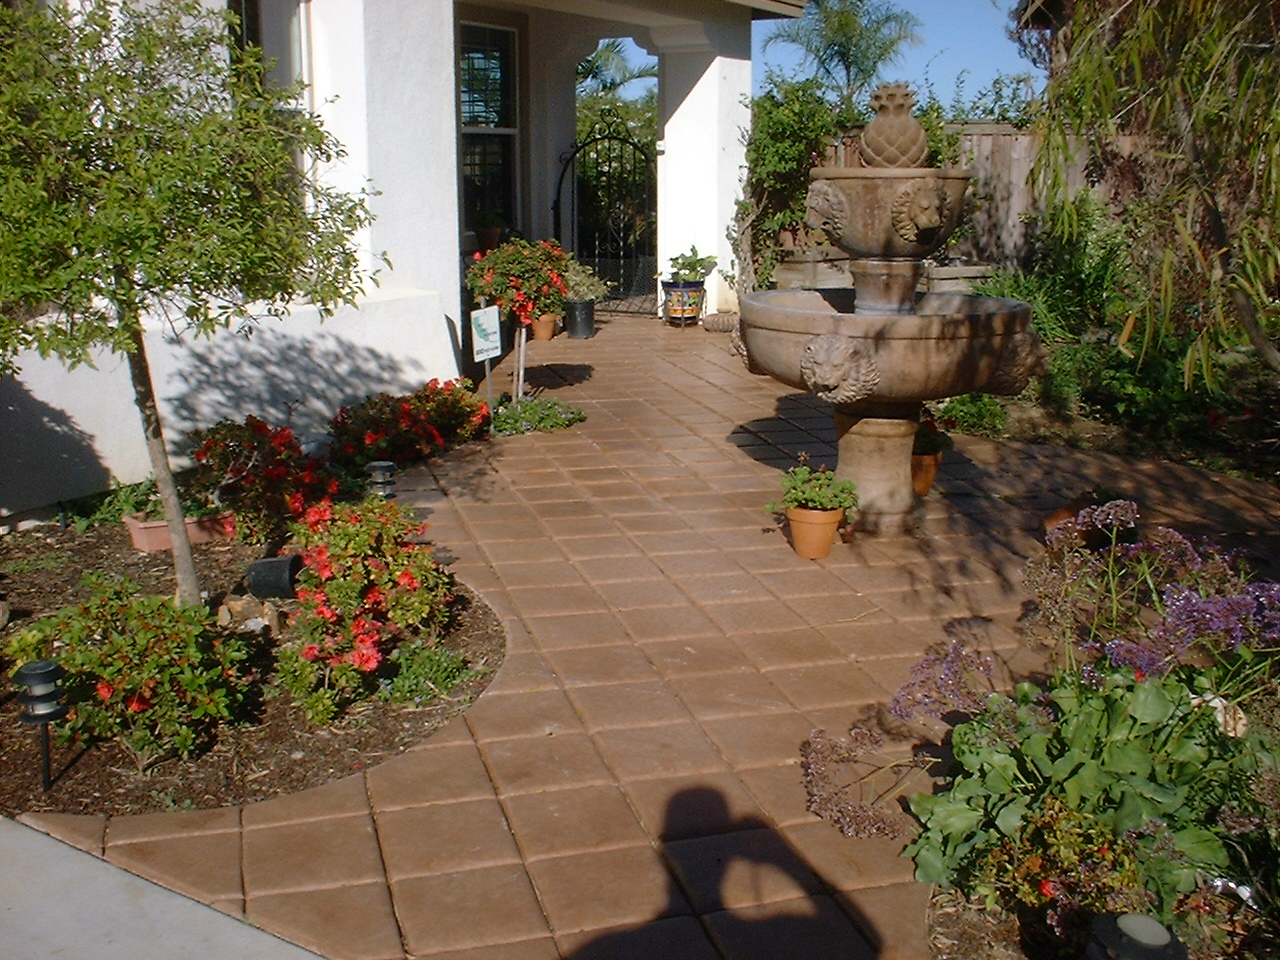 A Backyard Garden Space With Block Tiles